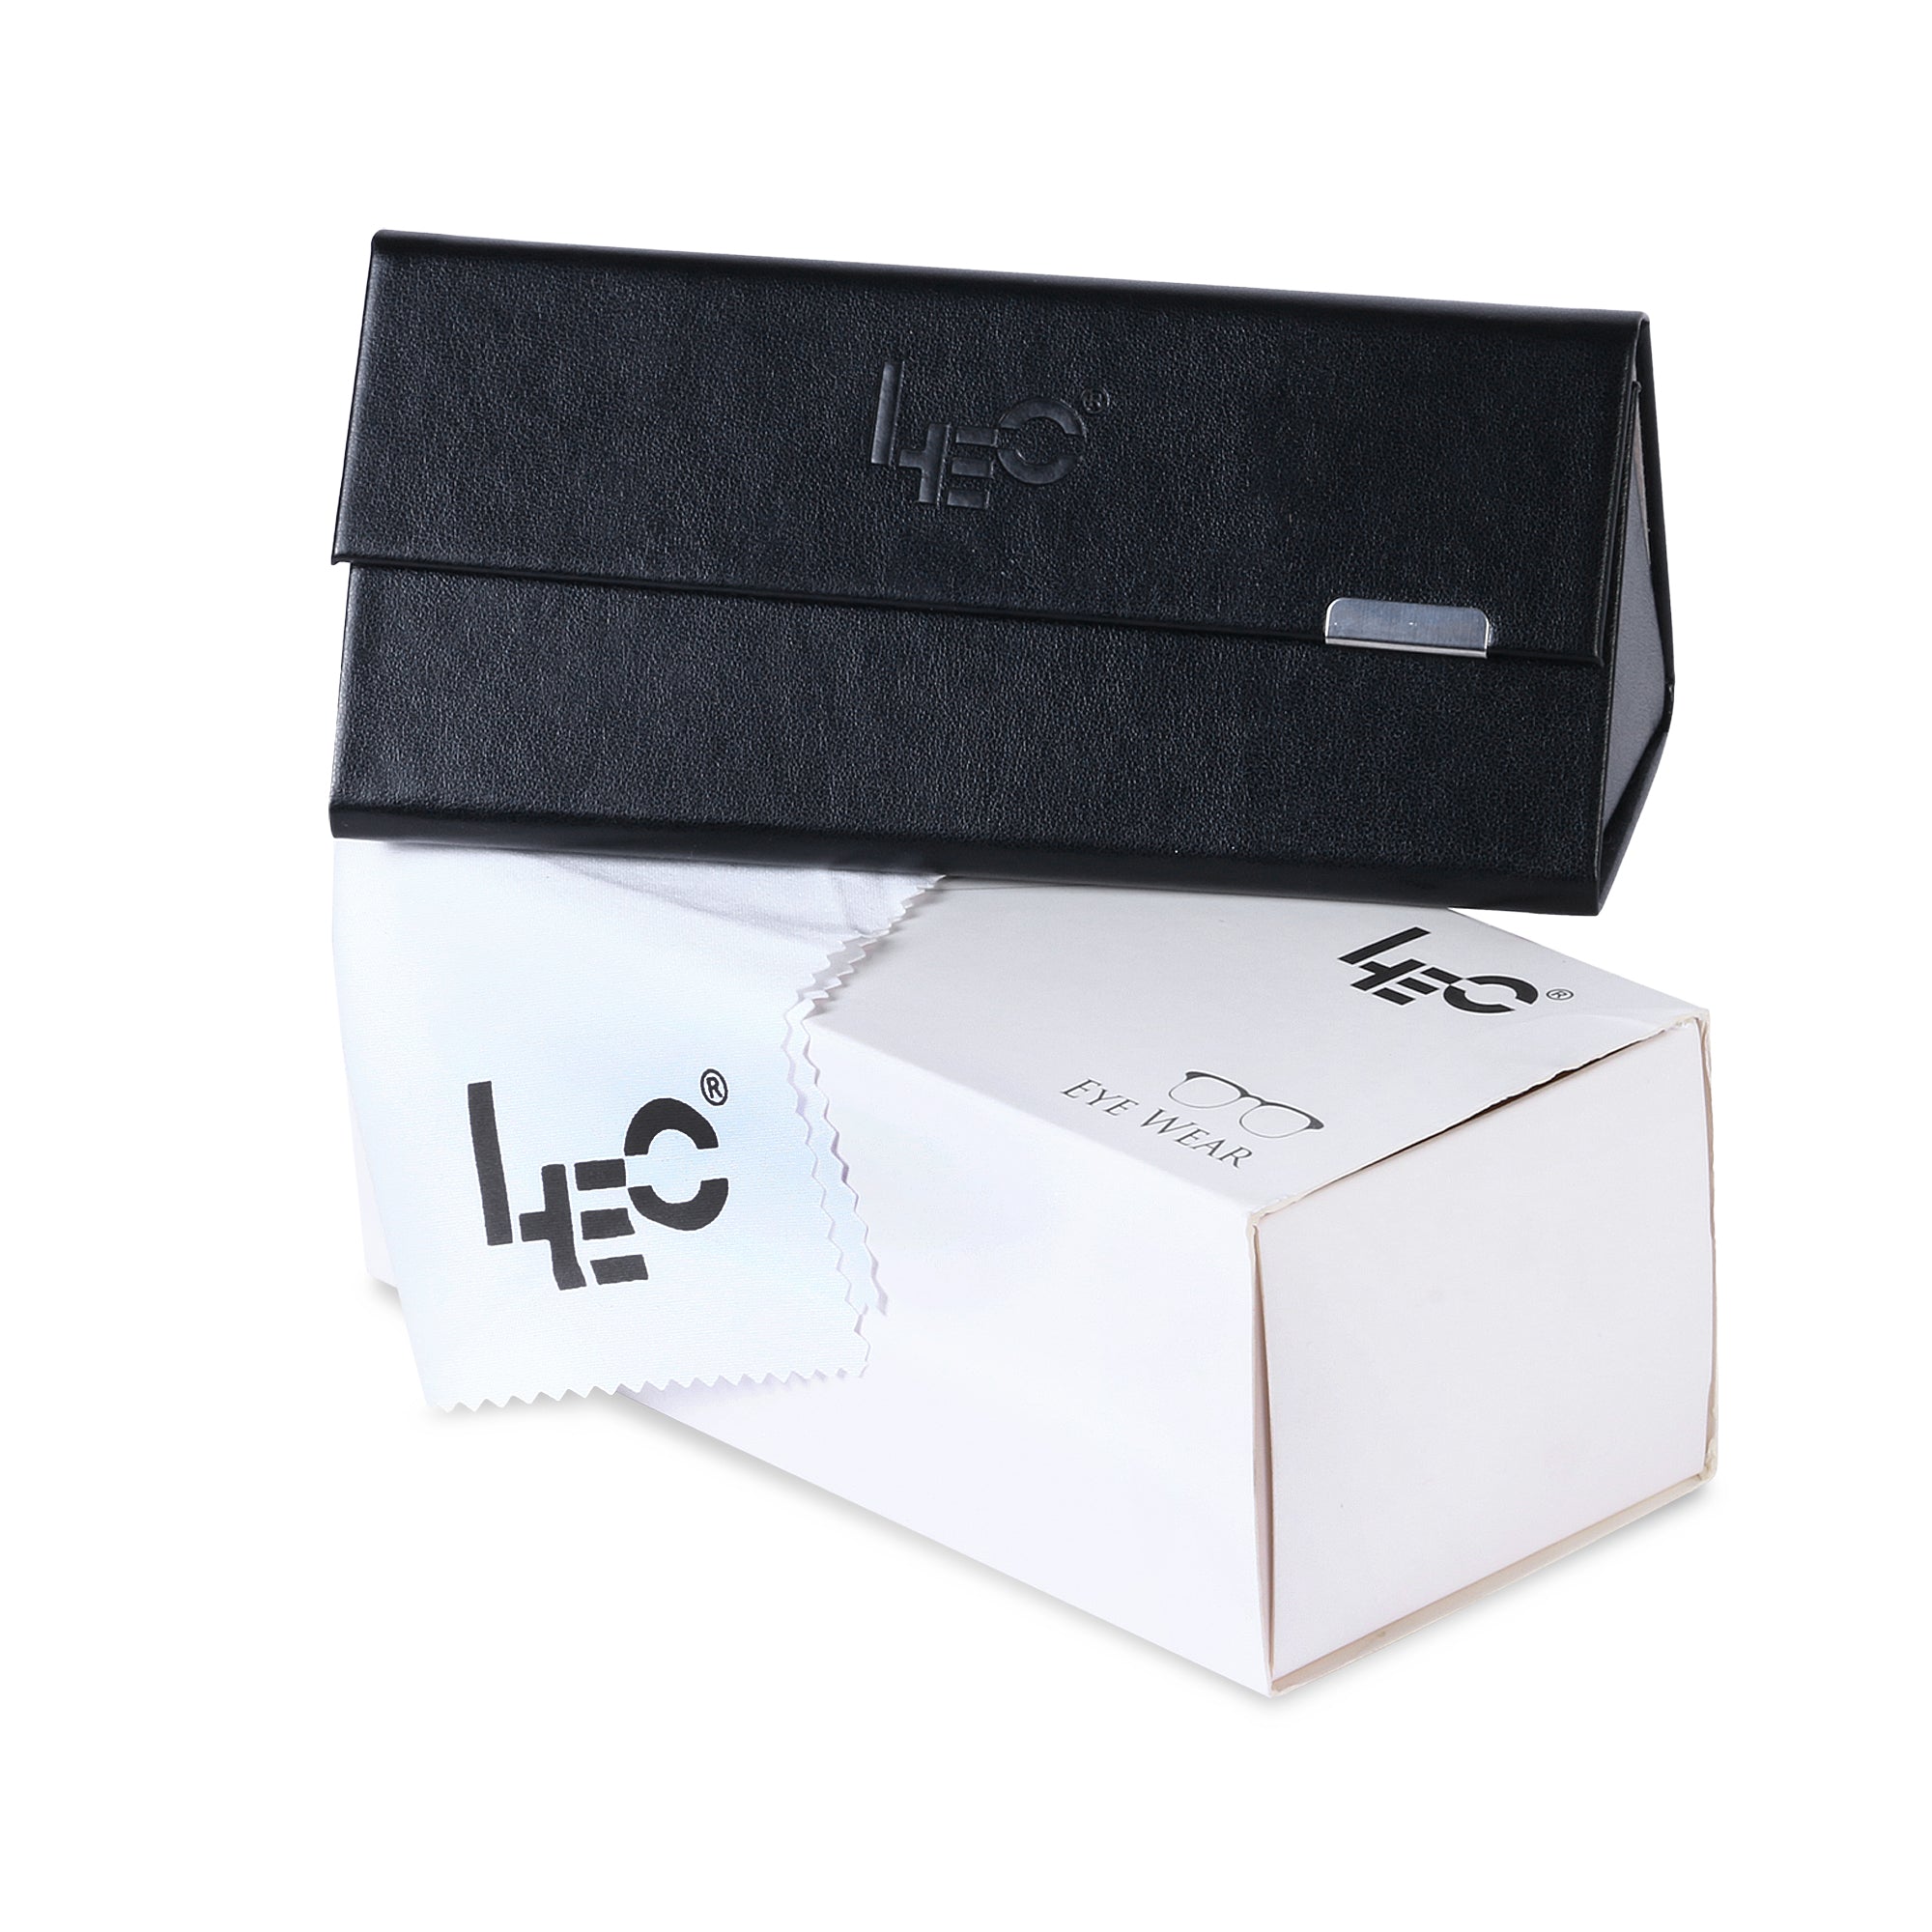 LEO's Black Square Eyeglasses- LDB004